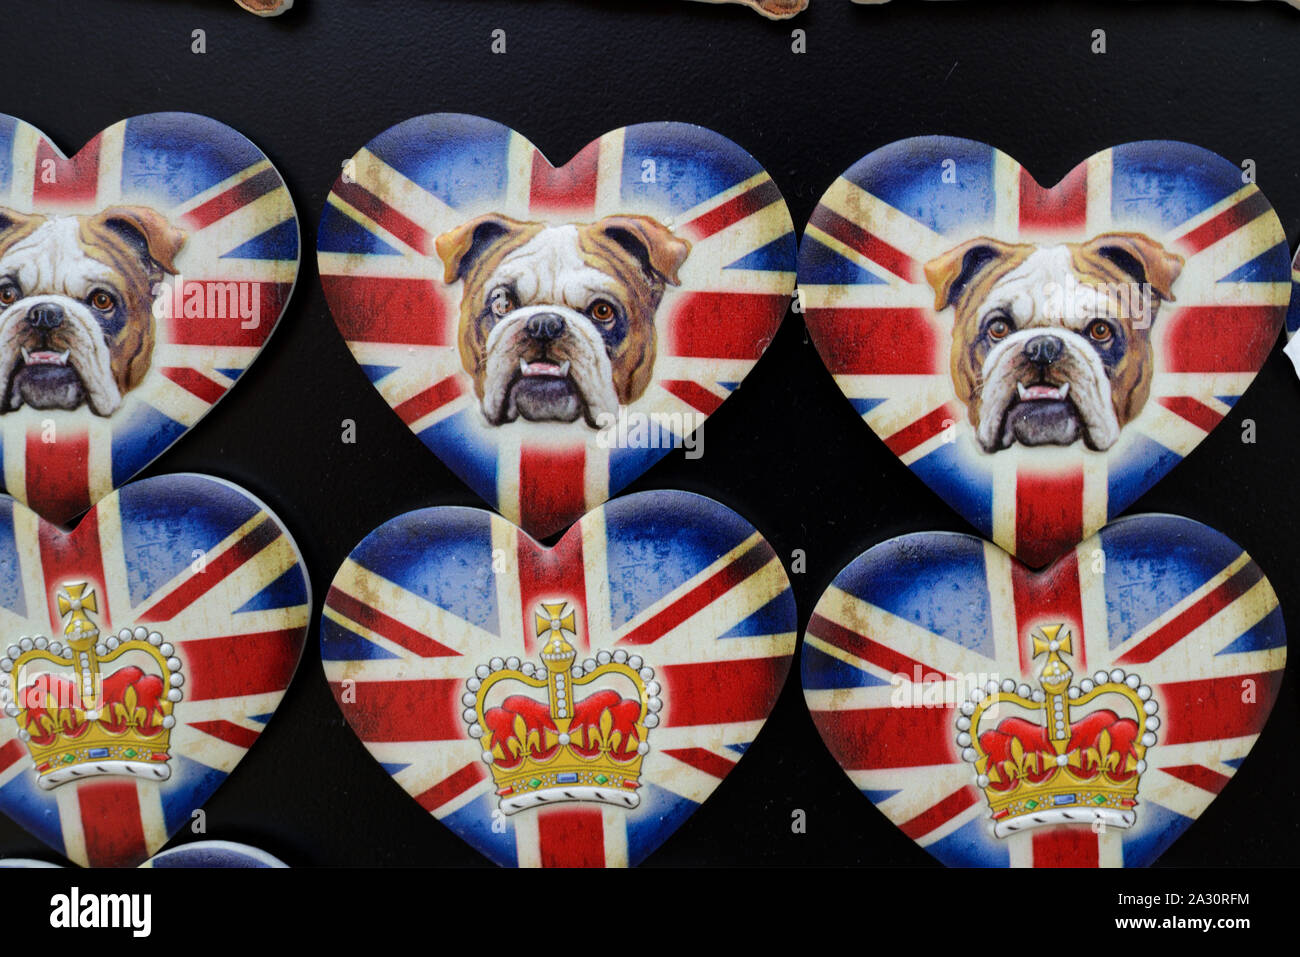 Die britische Krone, britische Bulldogge oder britischen Bulldoggen auf  heart-shaped Britische Flagge oder Union Jack Souvenir Kühlschrank Magnete  London UK Stockfotografie - Alamy